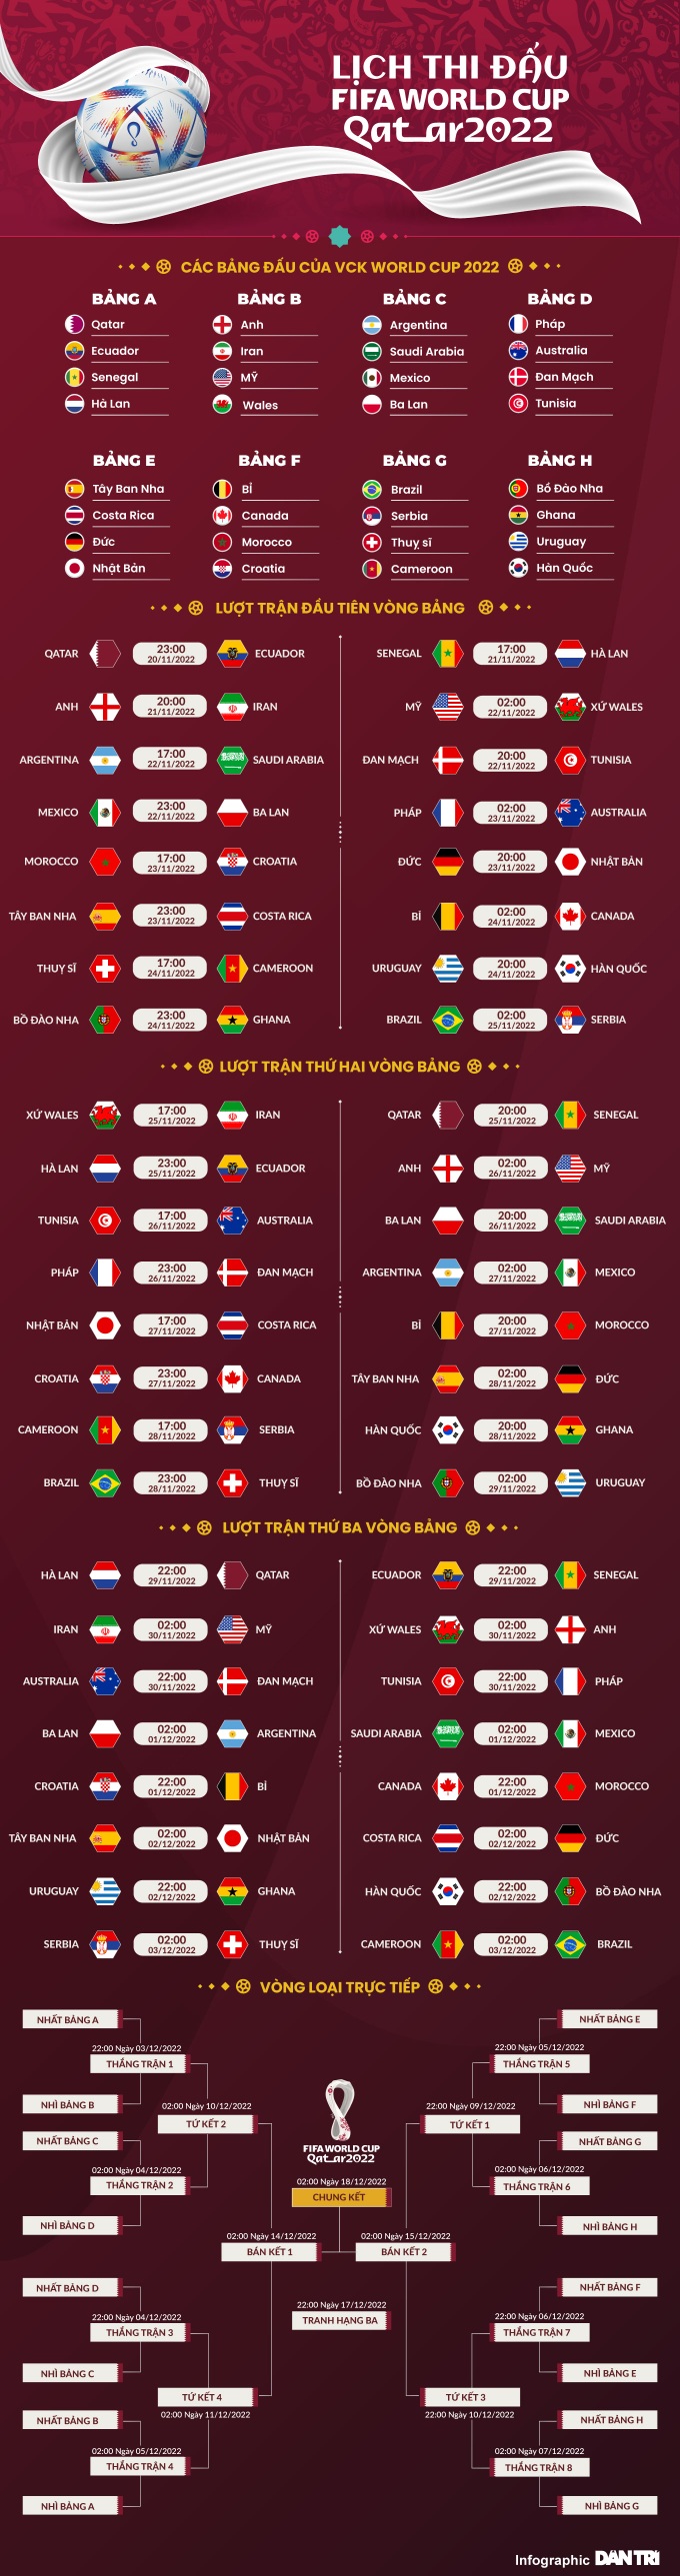 Lịch sử World Cup 1934: Chức vô địch của Italy